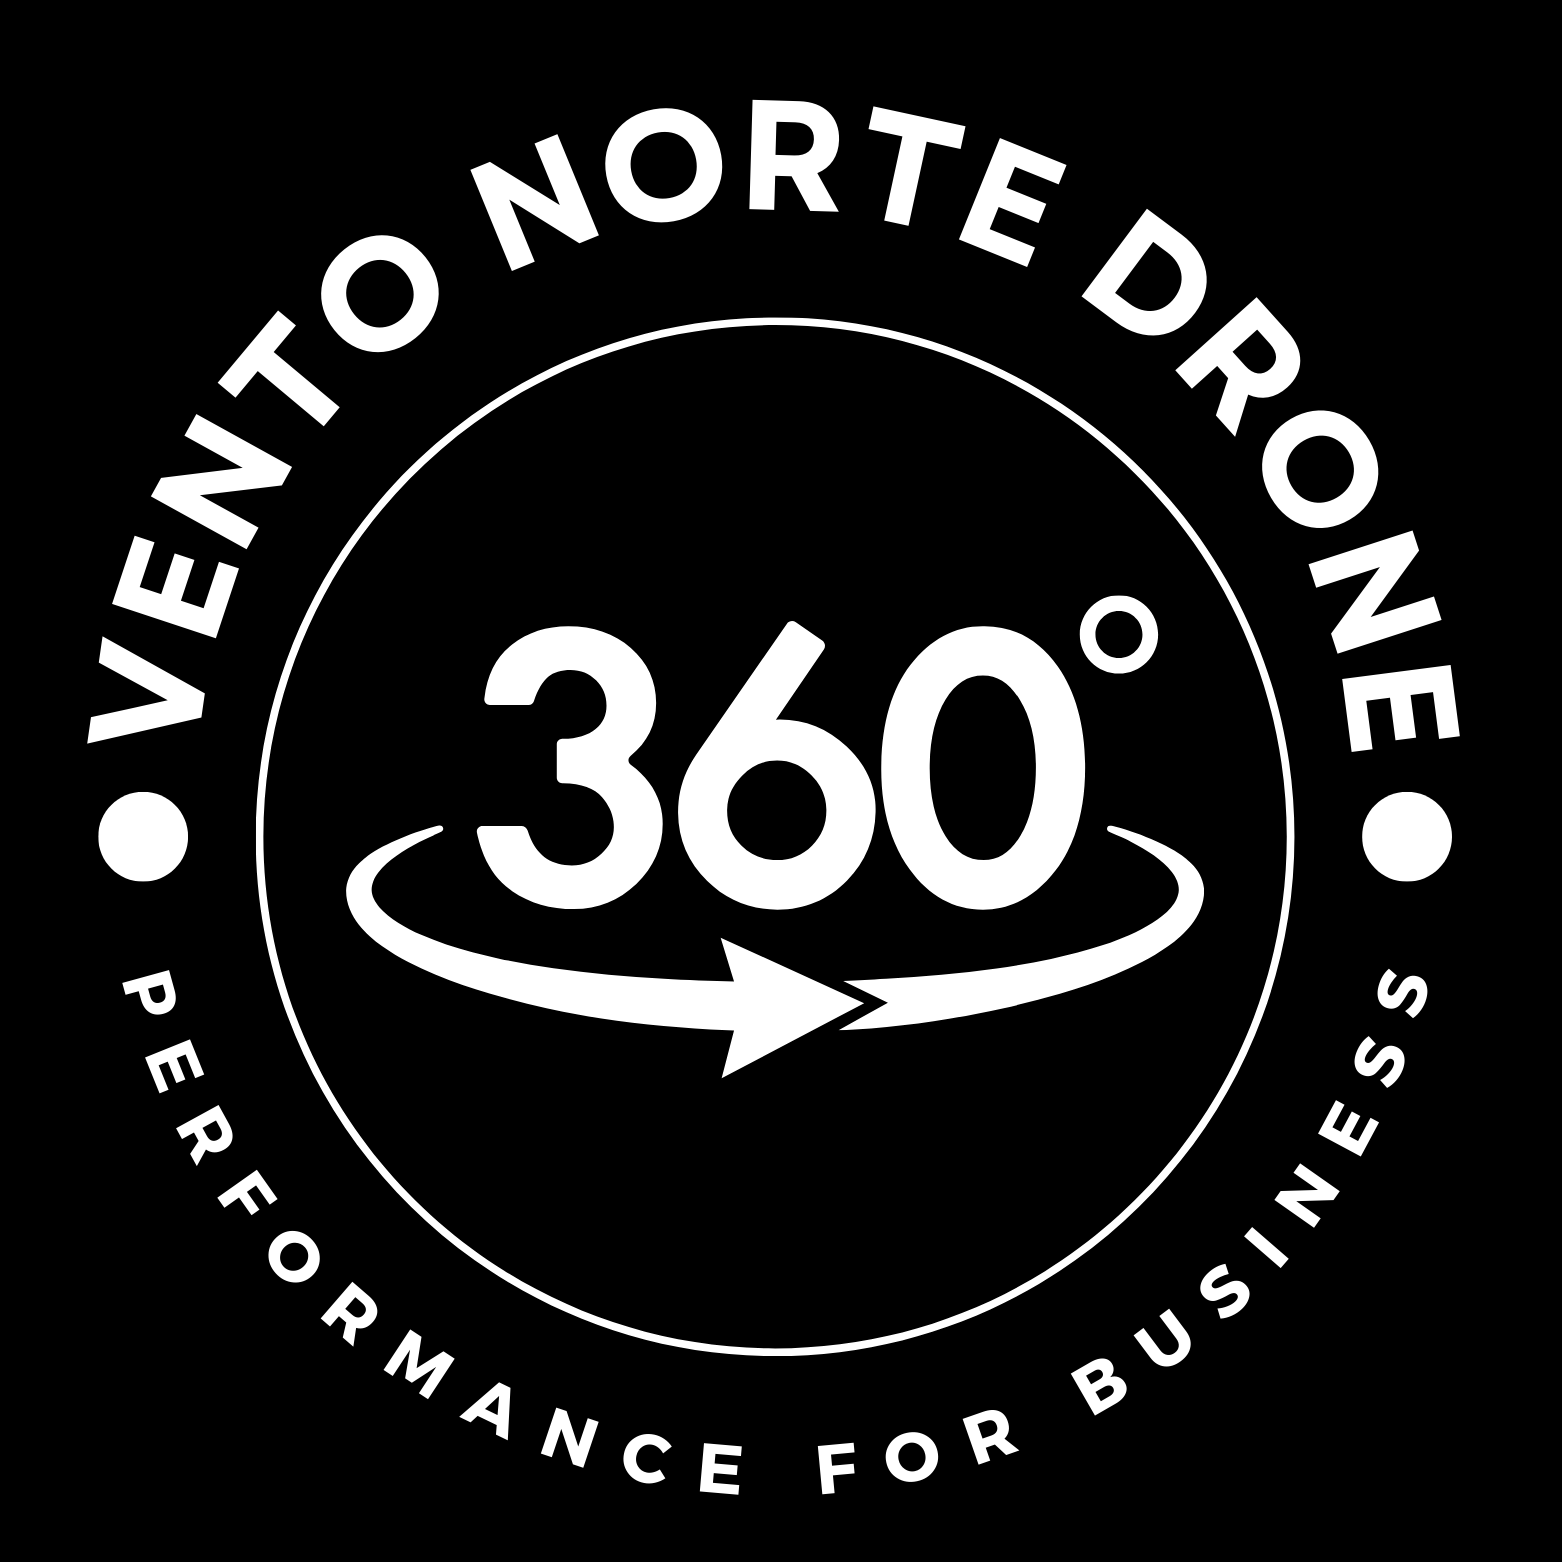 Vento Norte Drone - Tour Virtual - Fotos 360